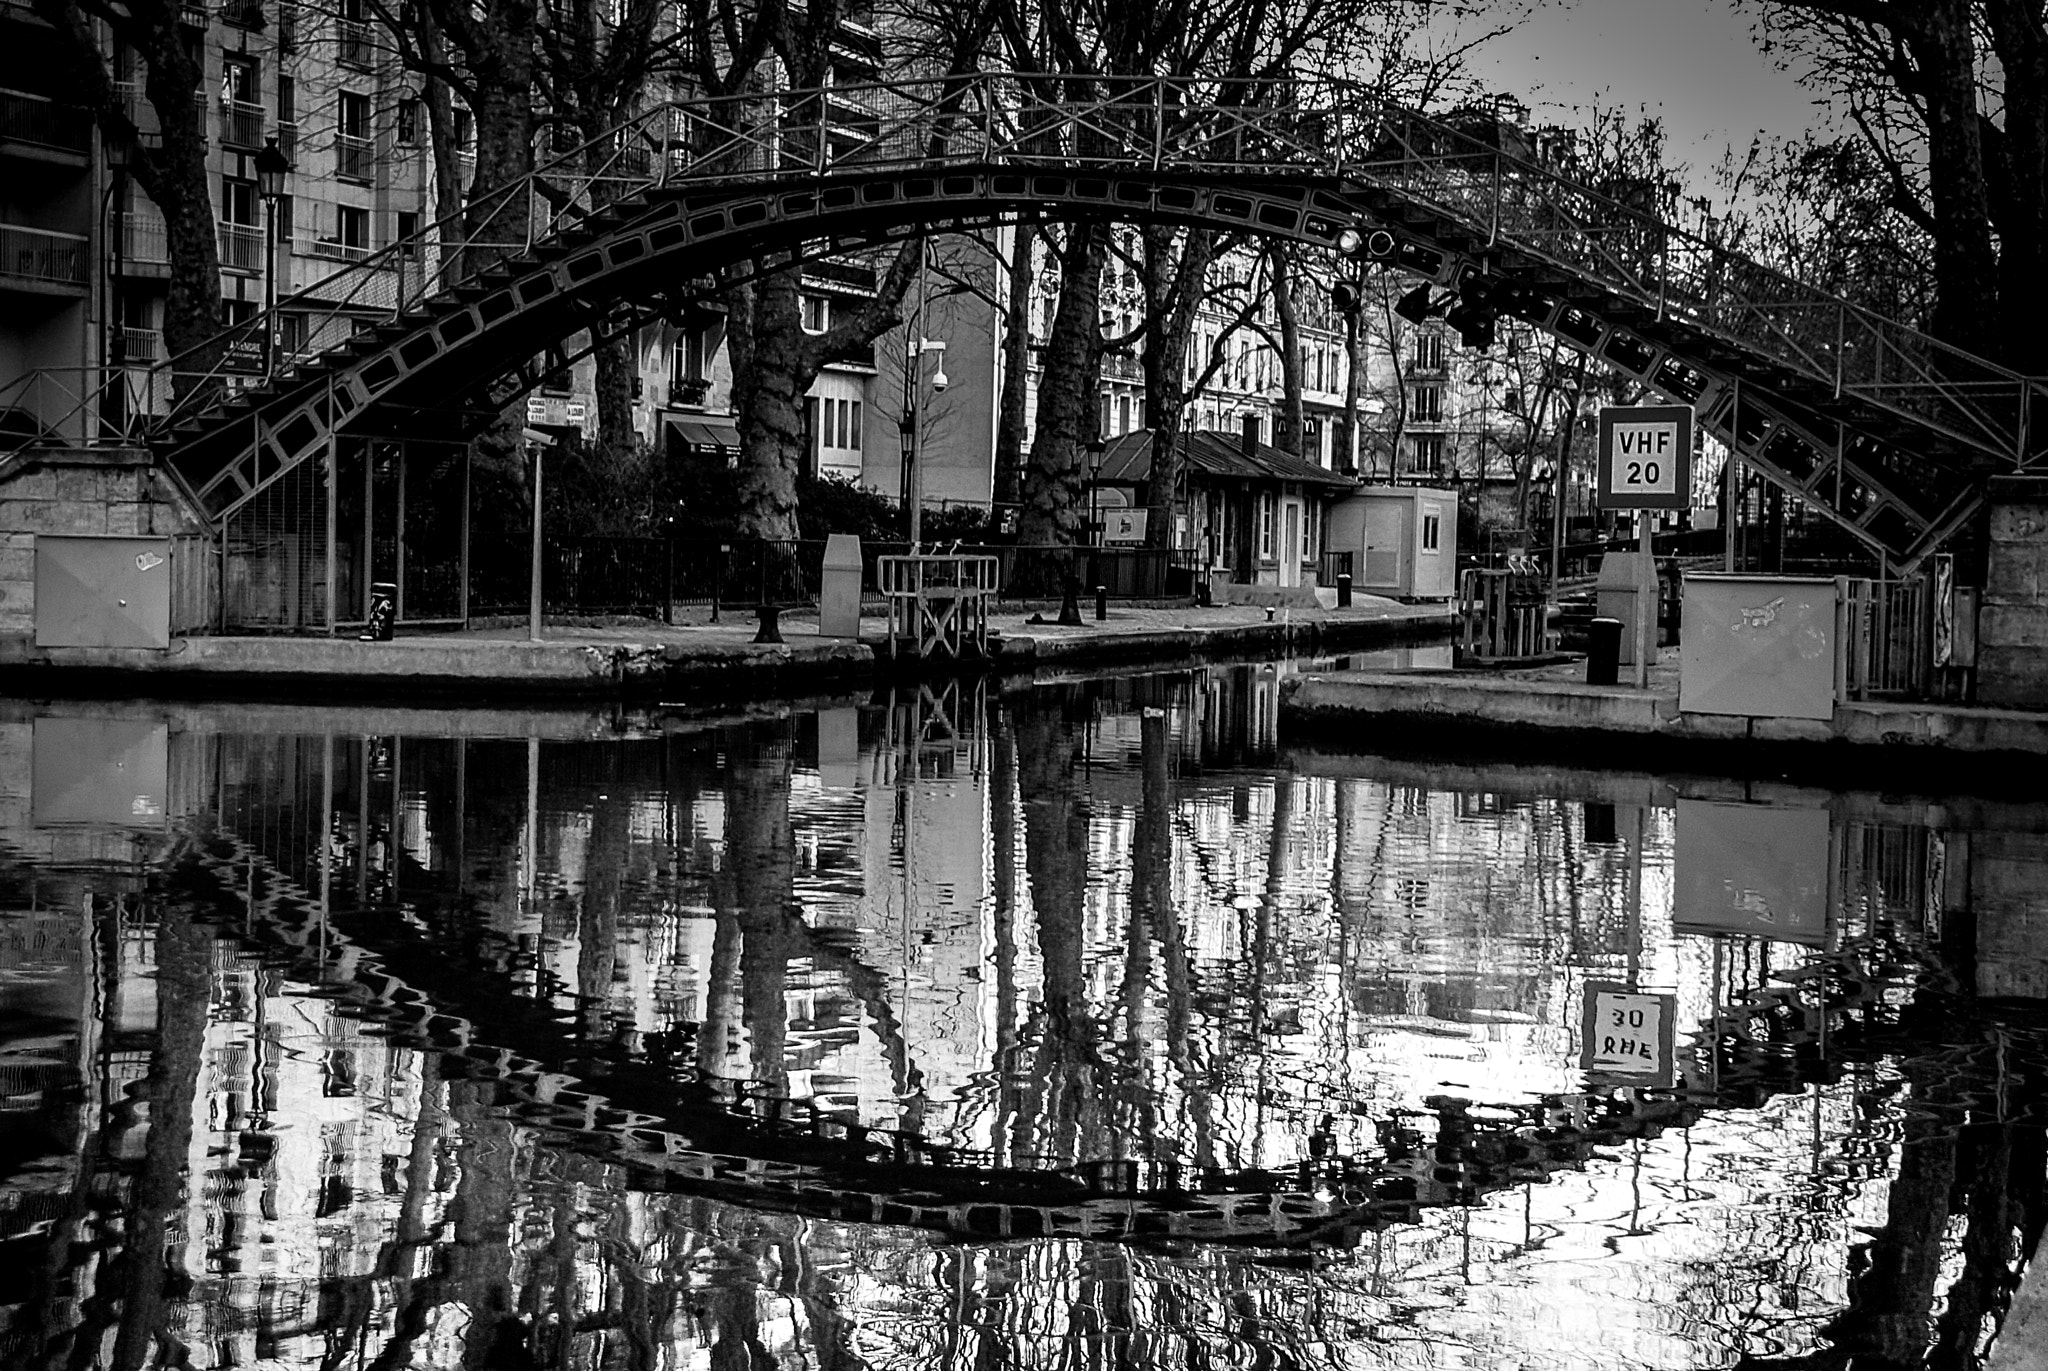 Pentax K10D sample photo. Fin journée sur le canal saint-martin (paris)... photography